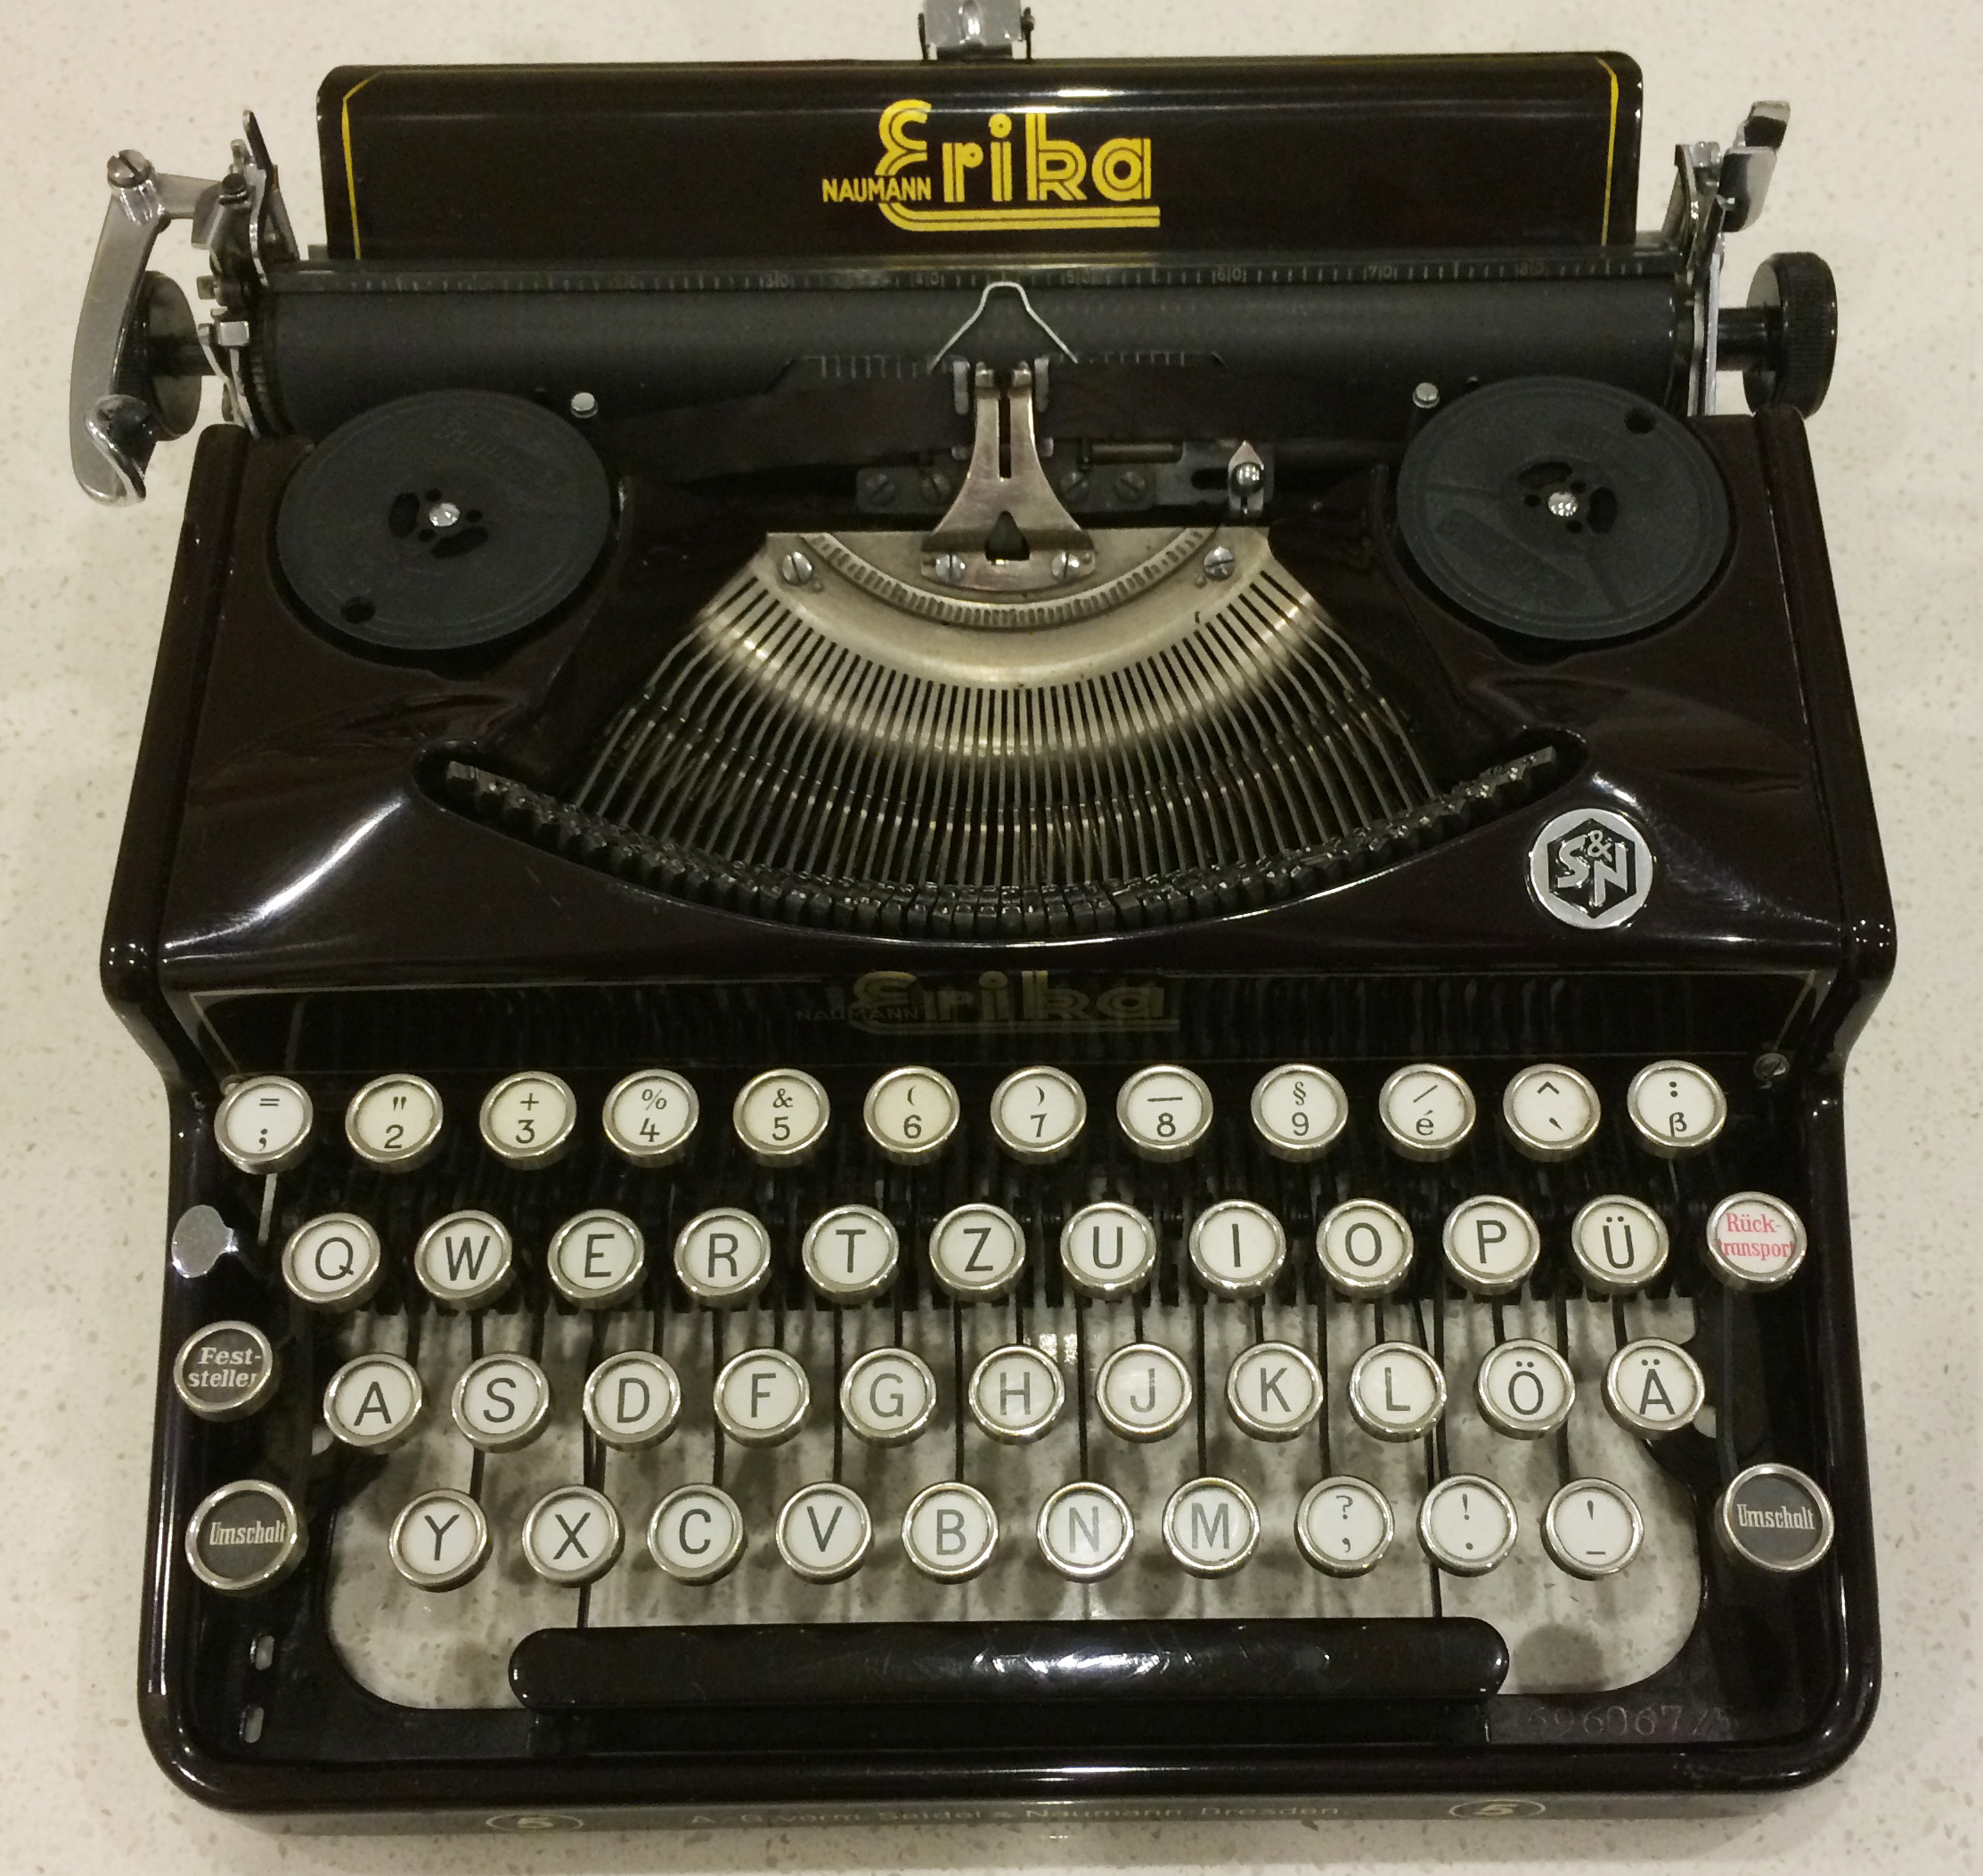 erika 5 typewriter